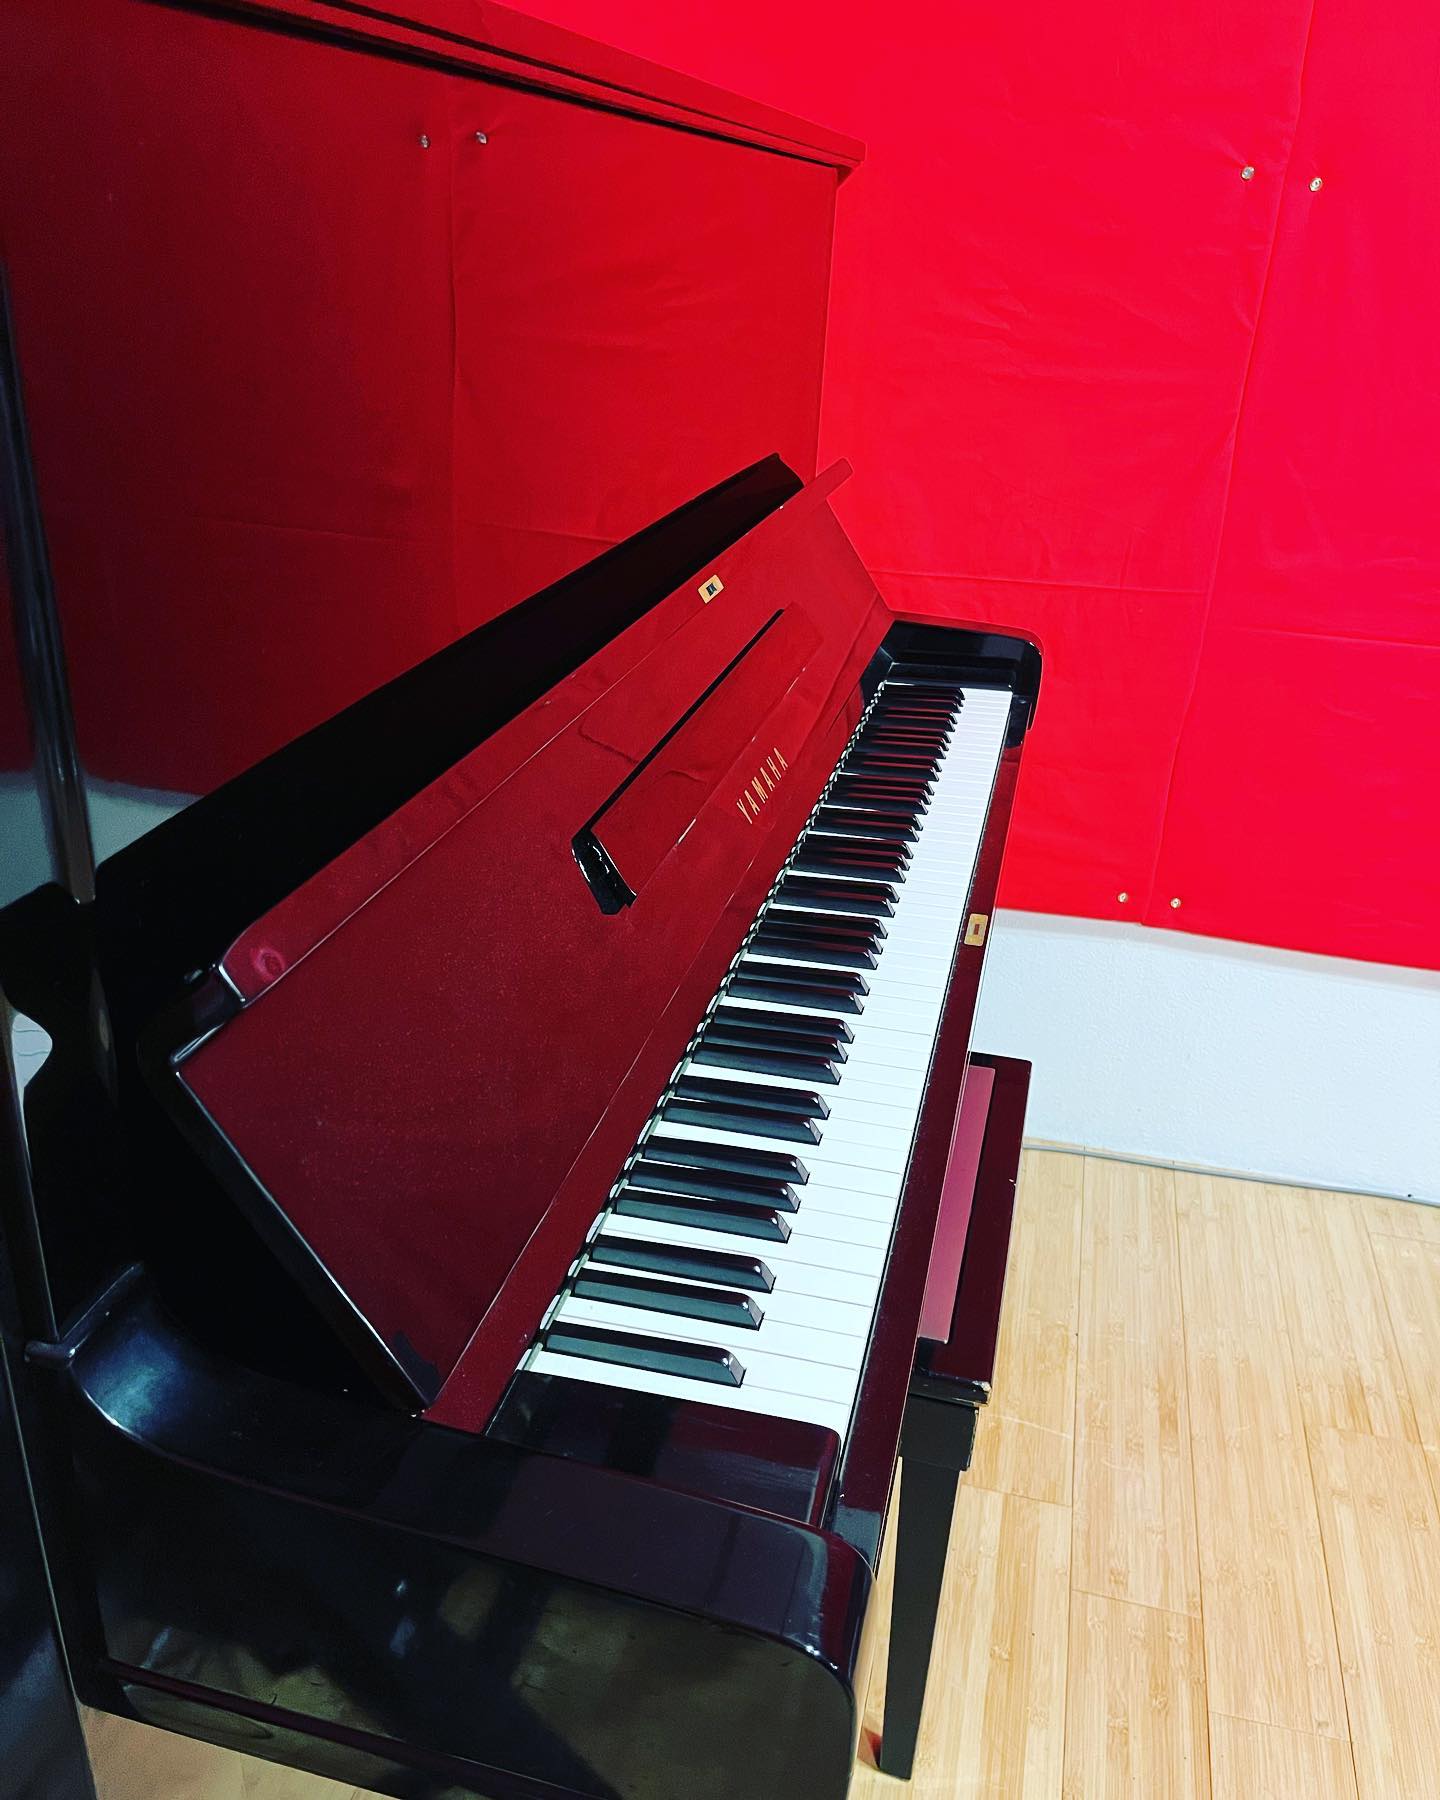 当店Cスタジオにはアップライトピアノがございます。1時間550円でお貸ししております。普段は鍵をかけてますので、ご利用希望のお客様はスタッフまでお声がけください。#音楽スタジオ #musicstudio #ピアノ#piano #アップライトピアノ #uprightpiano #ピアノレンタル #名古屋 #nagoya #名古屋市 #名古屋市千種区 #千種区 #chikusa #千種区新西 #千種区スタジオ #個人練習 #バンド練習 #ネット予約 #音楽 #music #楽器#instrument #guitar #bass #drums #piano #vocals #keyboard